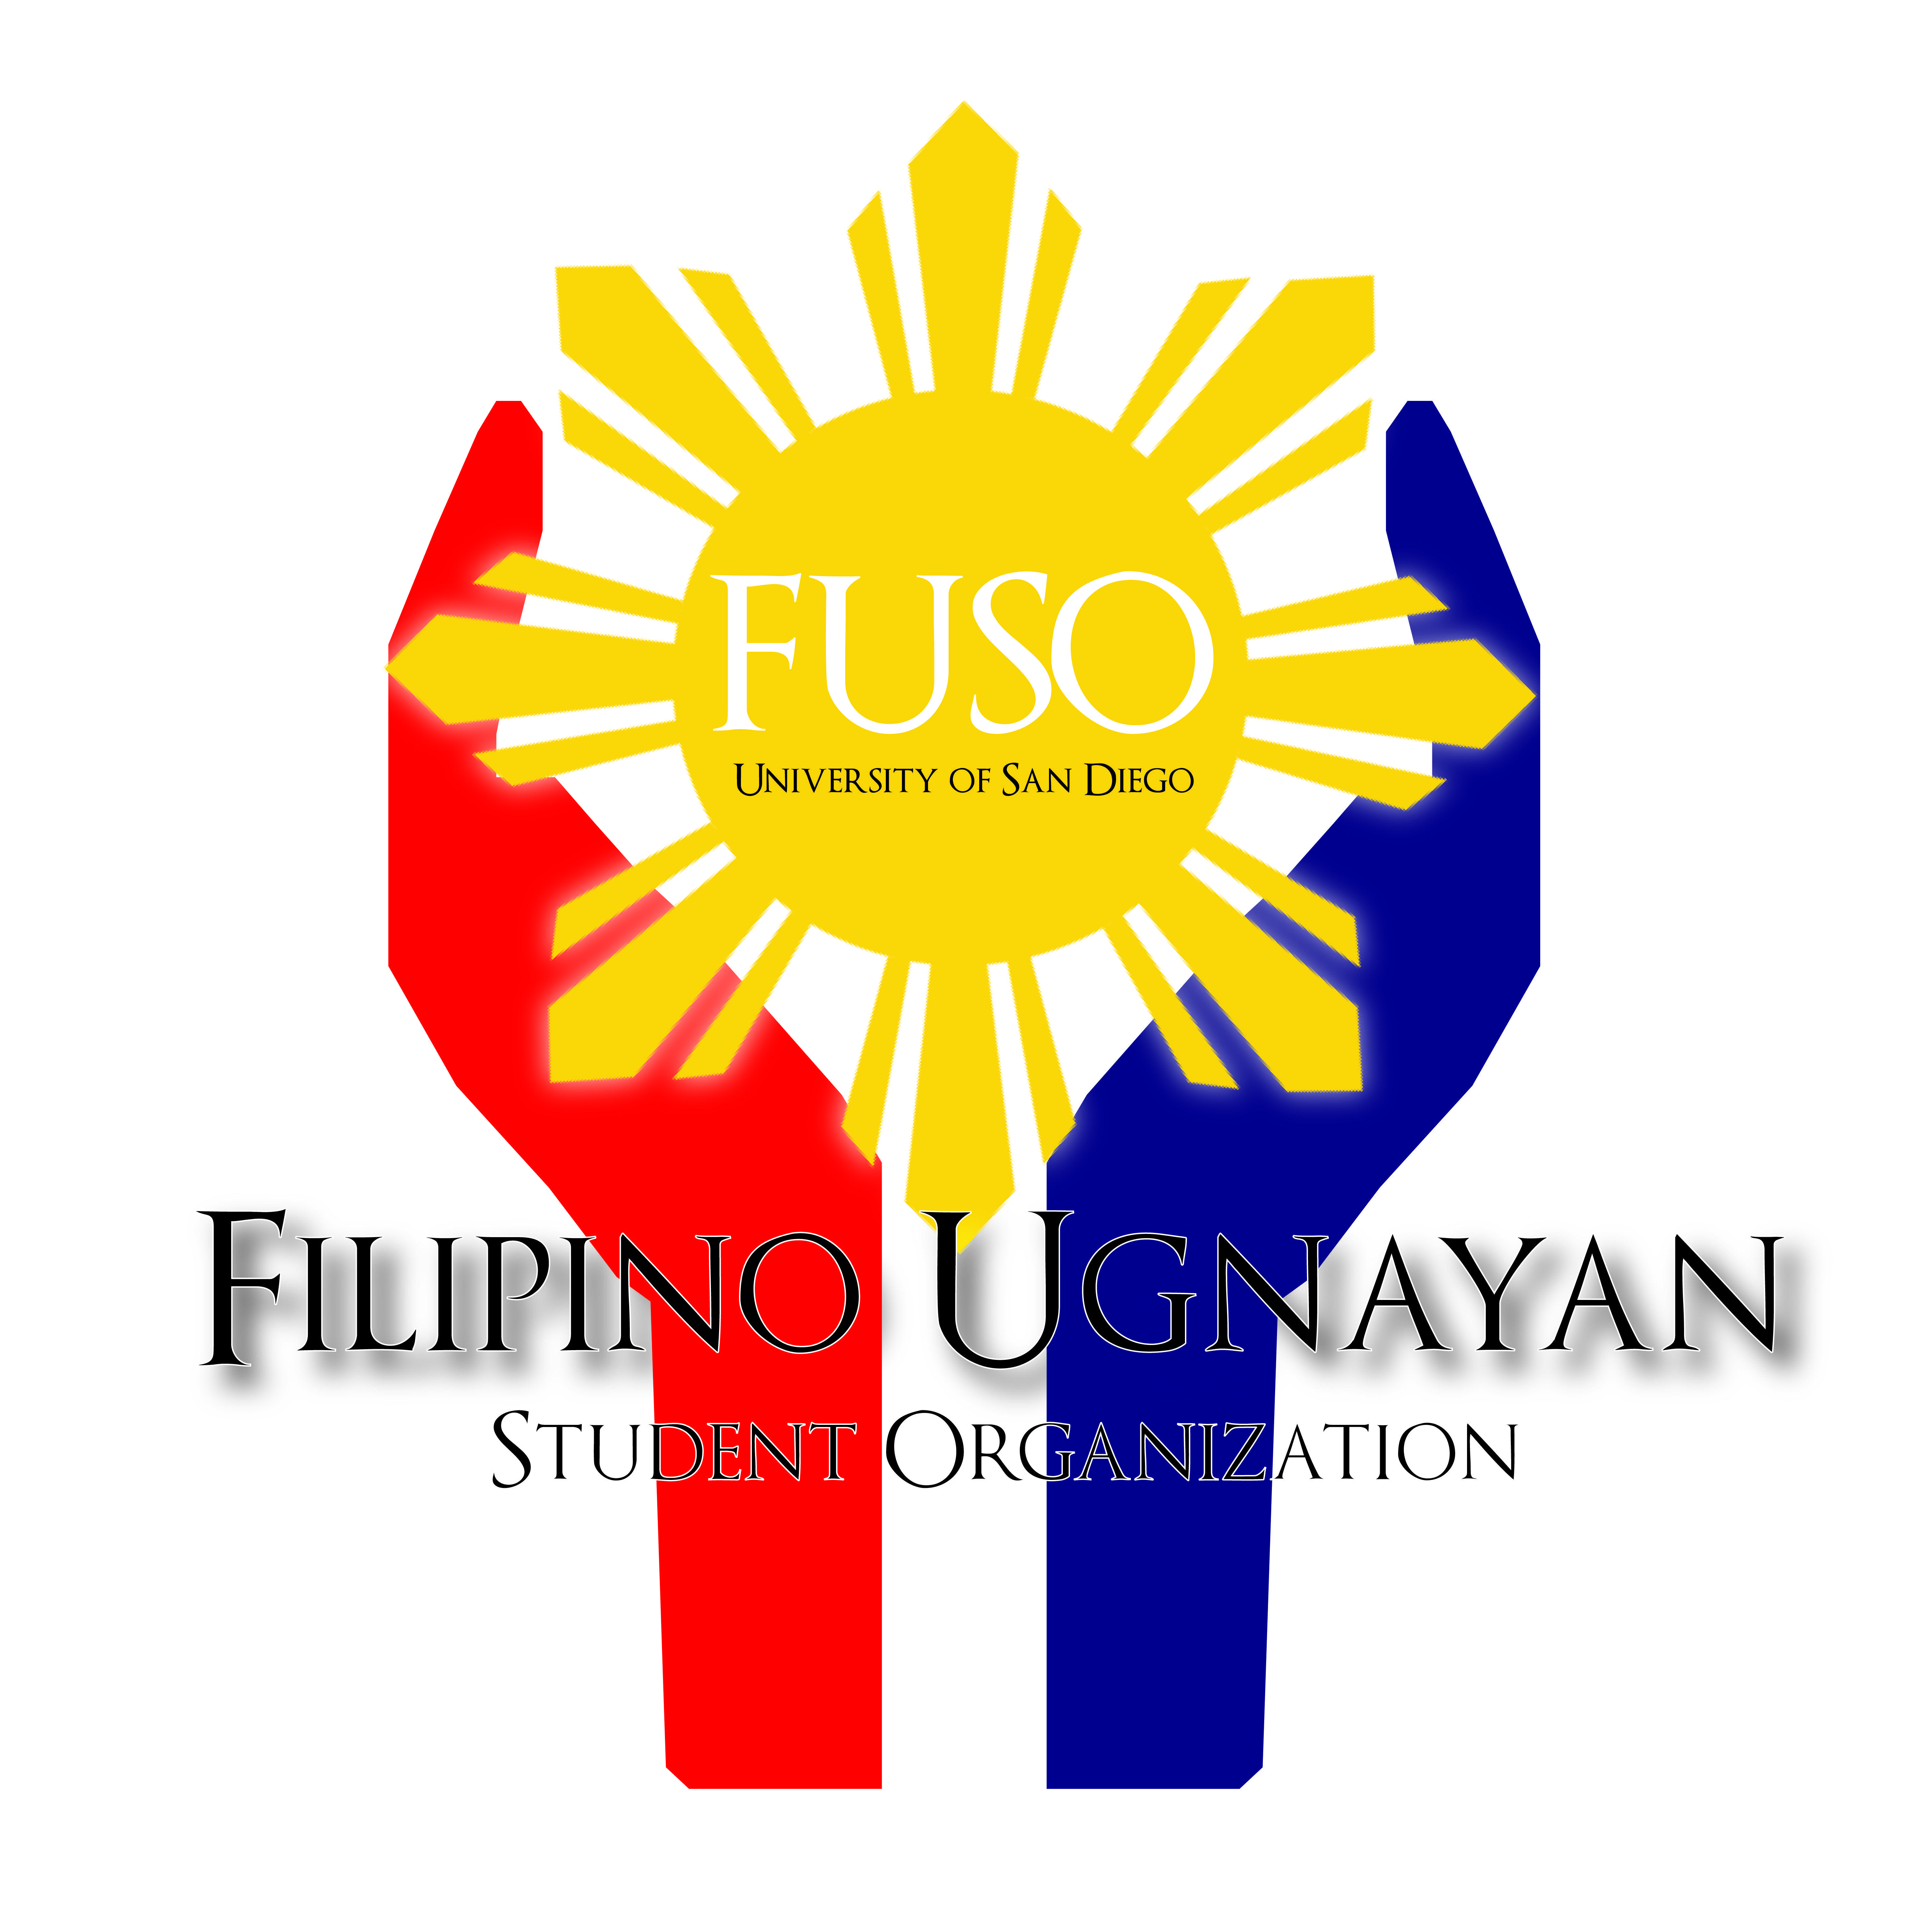 Filipino Logo - About Us | Filipino Ugnayan Student Organization (FUSO)